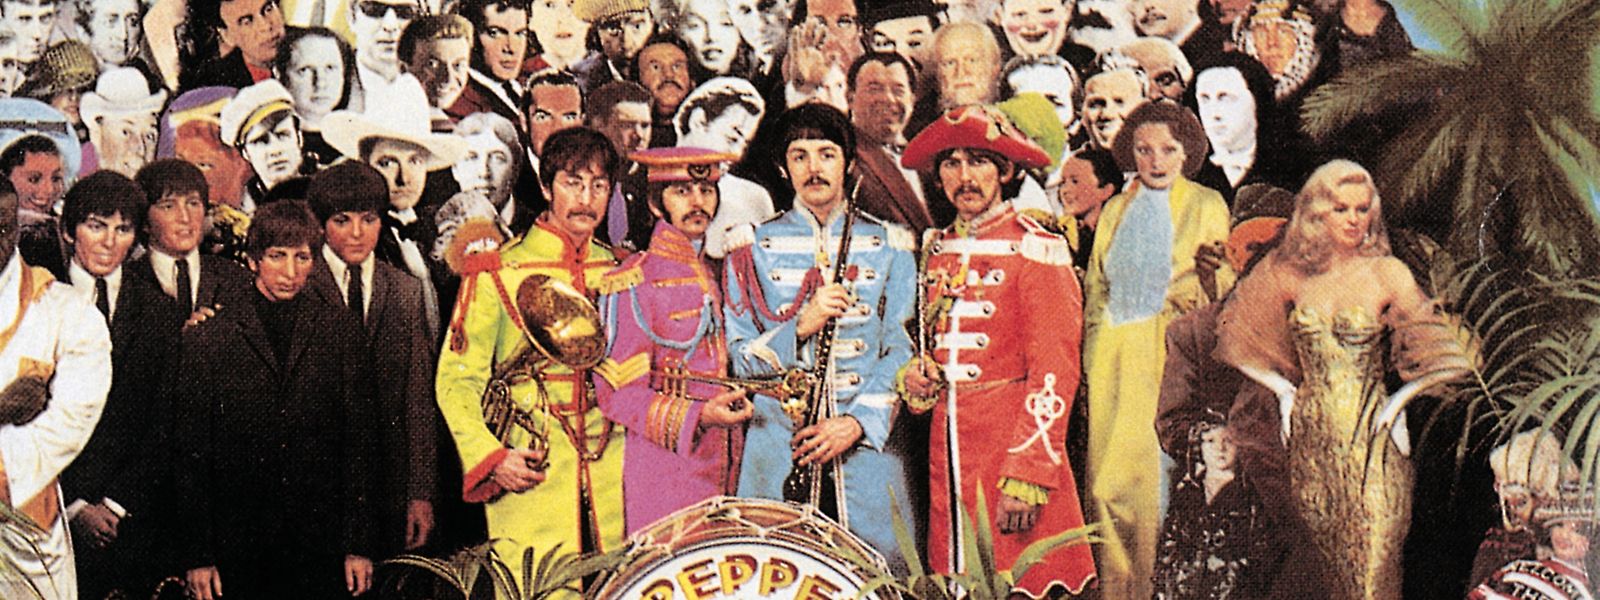 Die Beatles und ihre "Gäste" auf dem Plattencover von "Sgt. Peppers Lonely Hearts Club Band". 